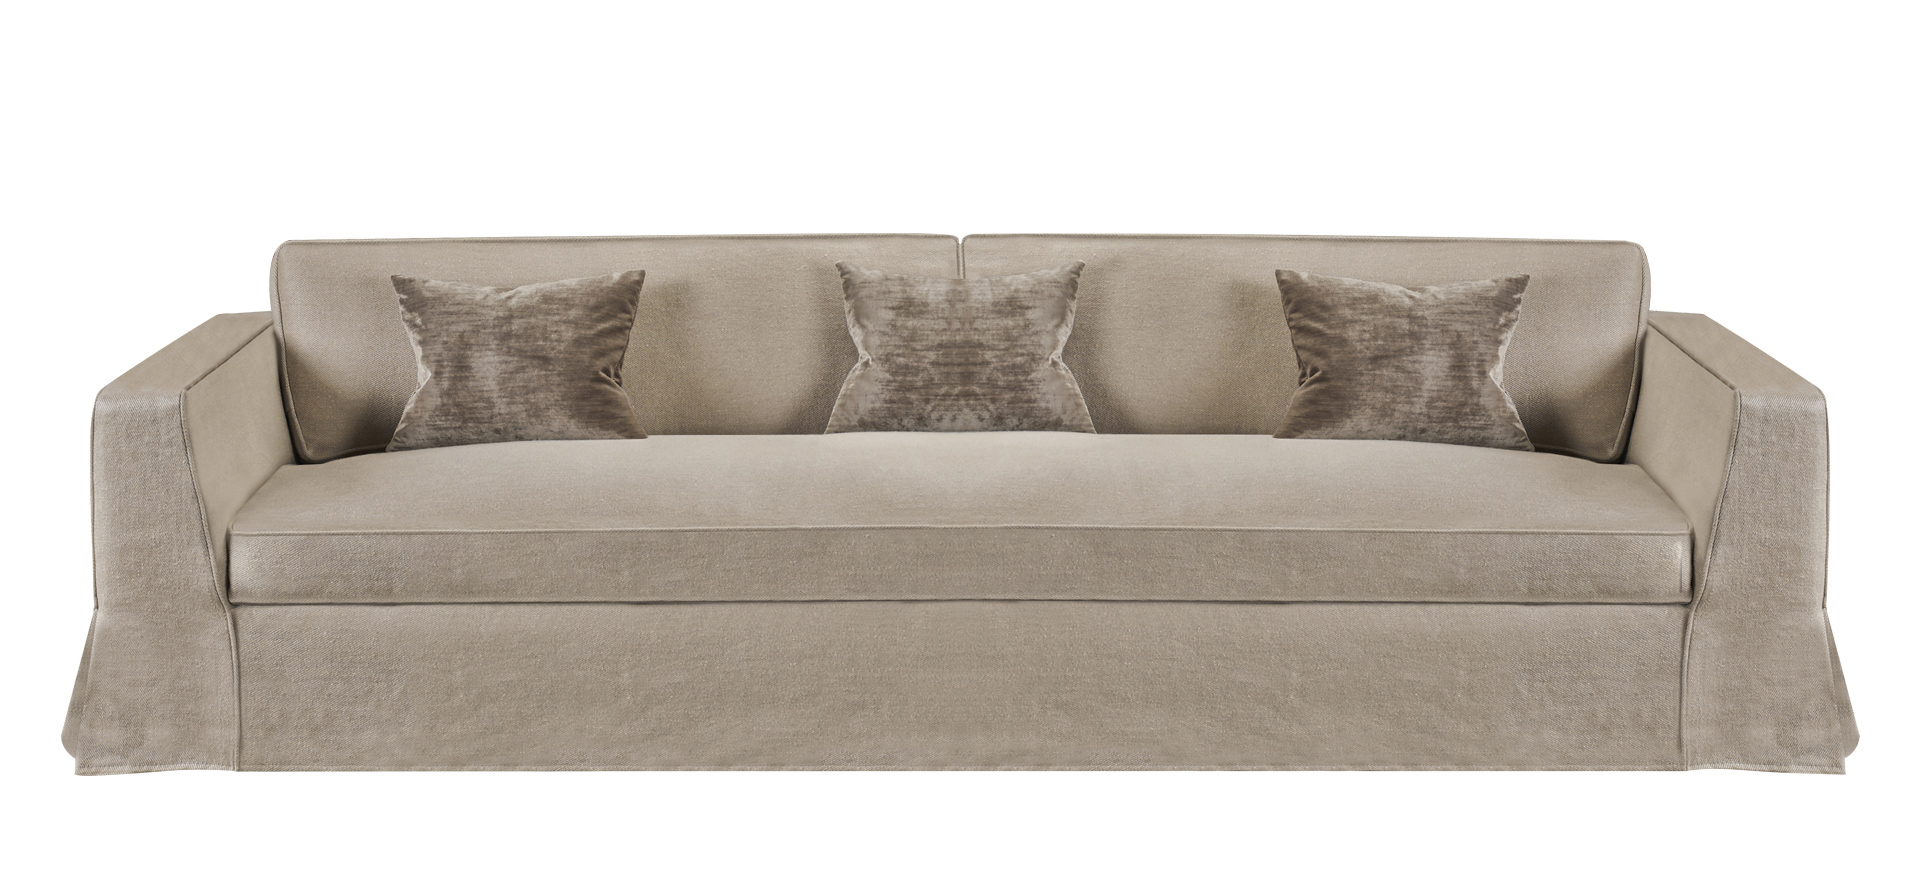 Oscar — диван, целиком обитый съемной тканью, из каталога Promemoria | Promemoria